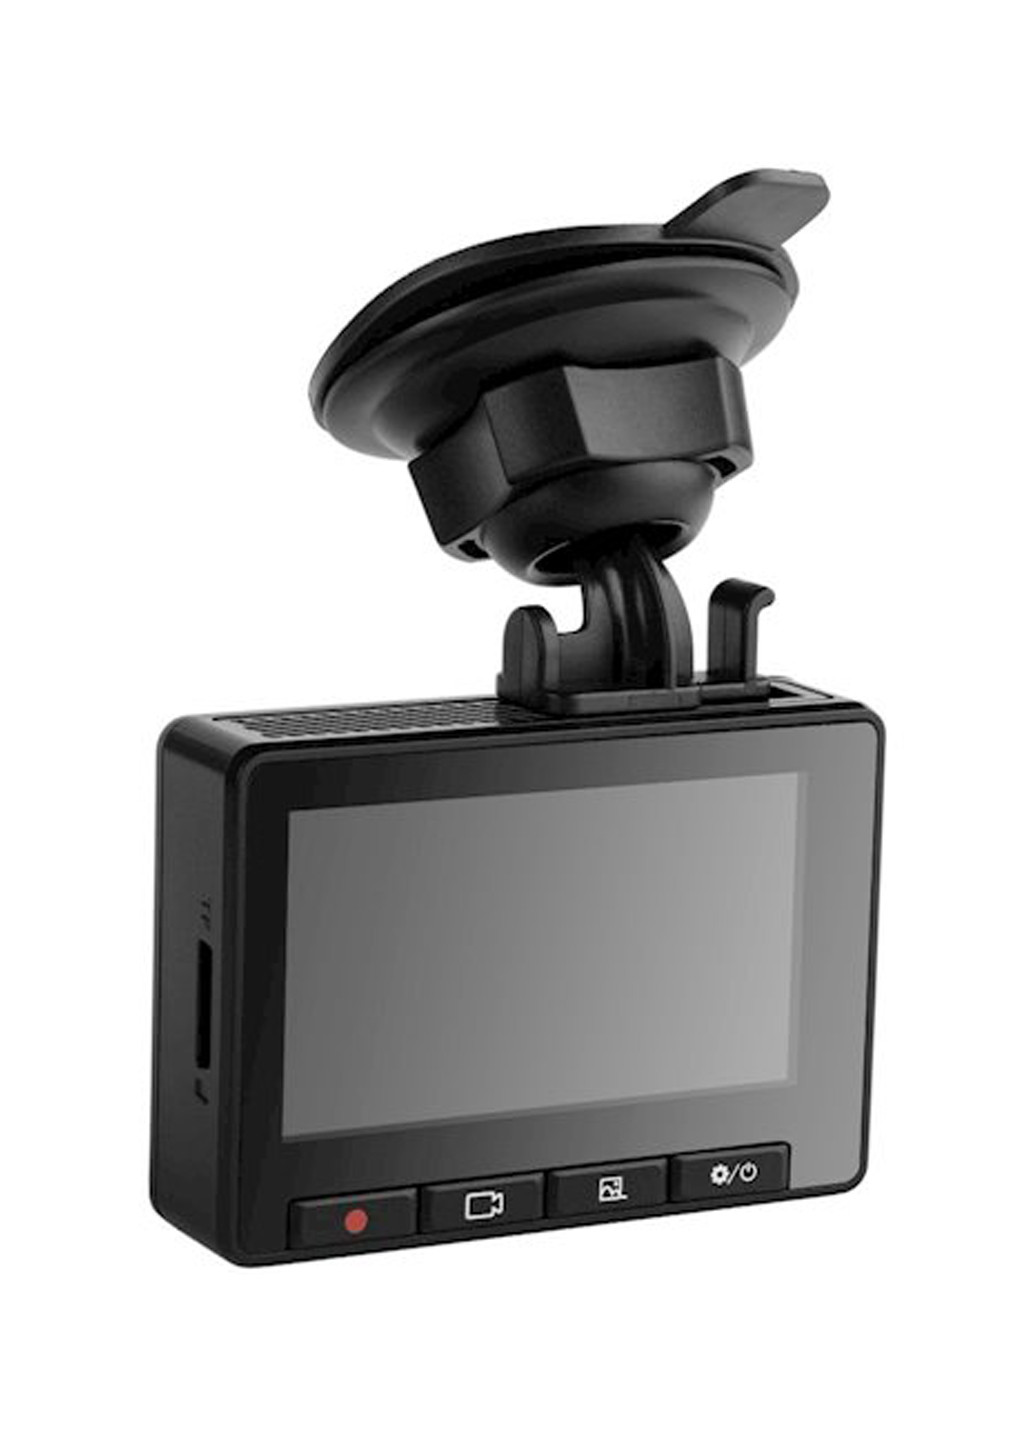 Автомобильный видеорегистратор Globex ge-201w (133790711)